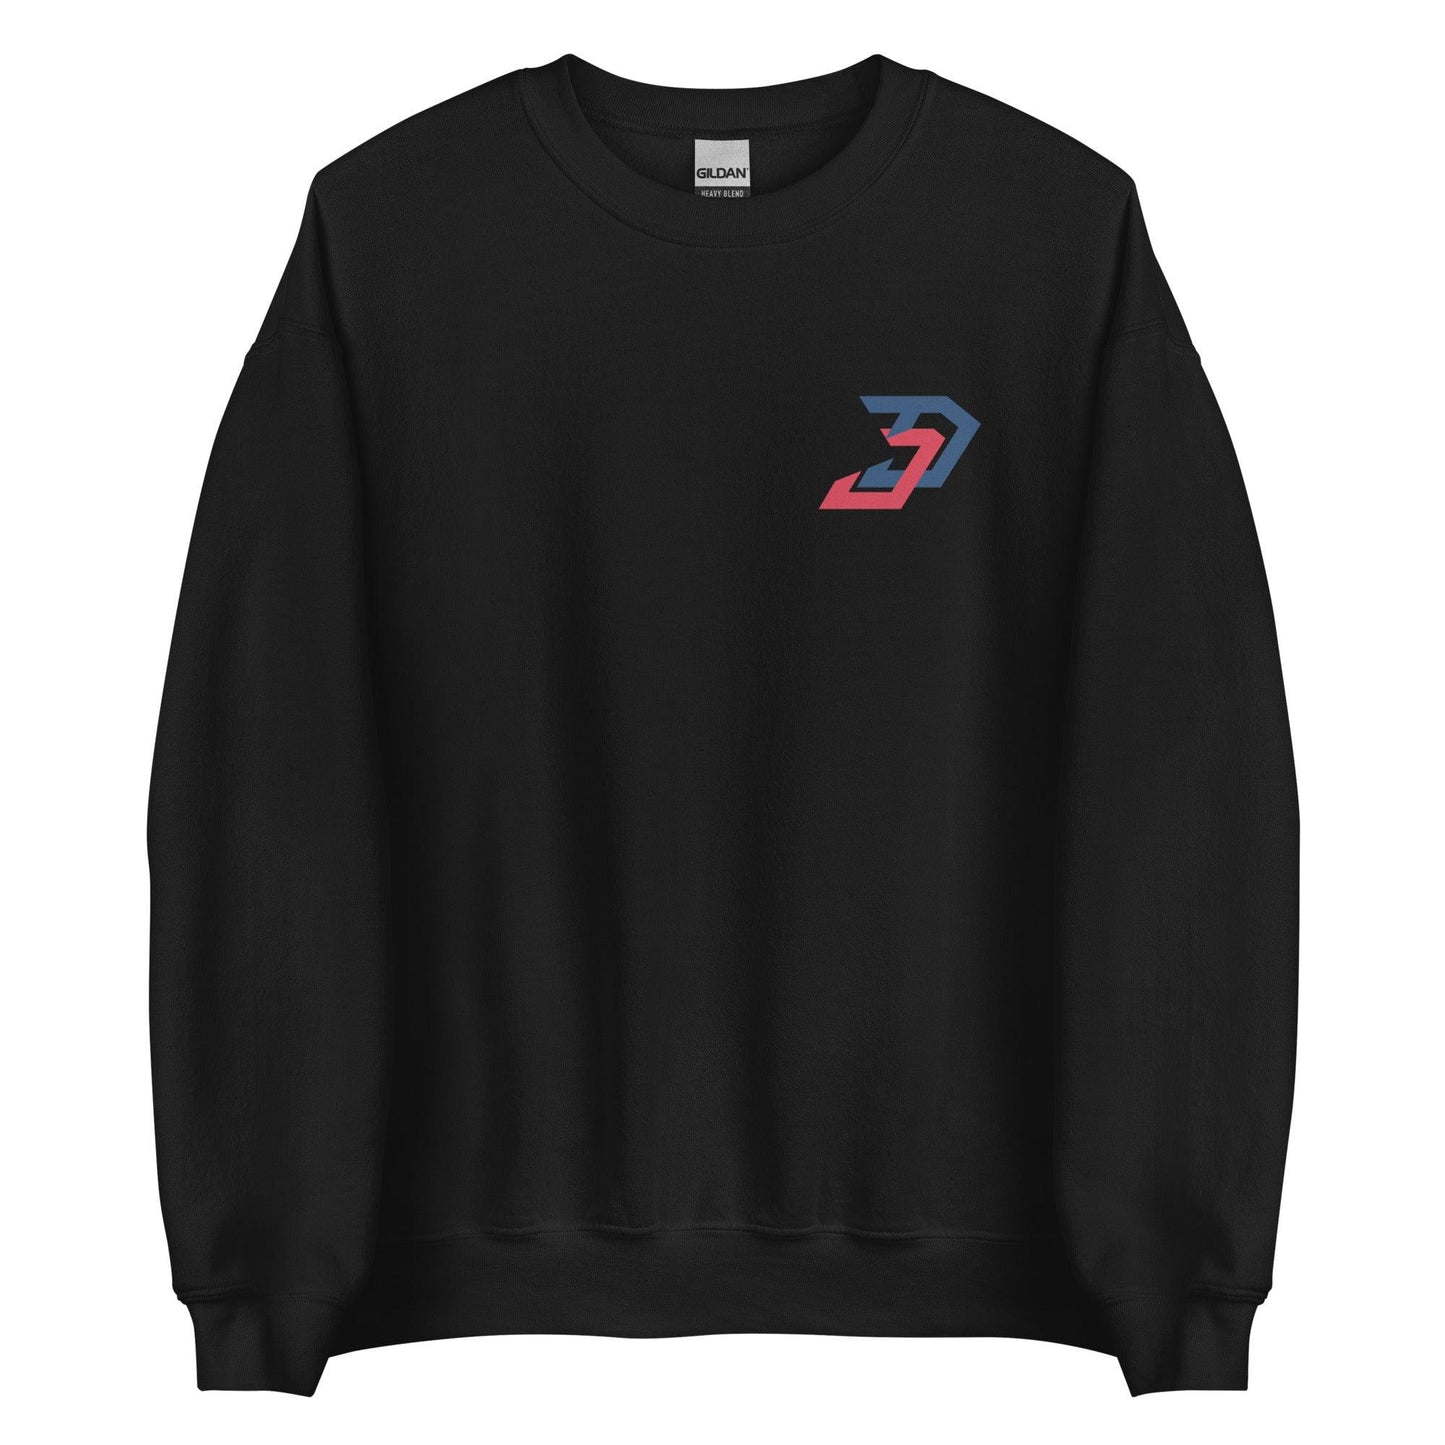 Jack DeGroat “Signature” Sweatshirt - Fan Arch